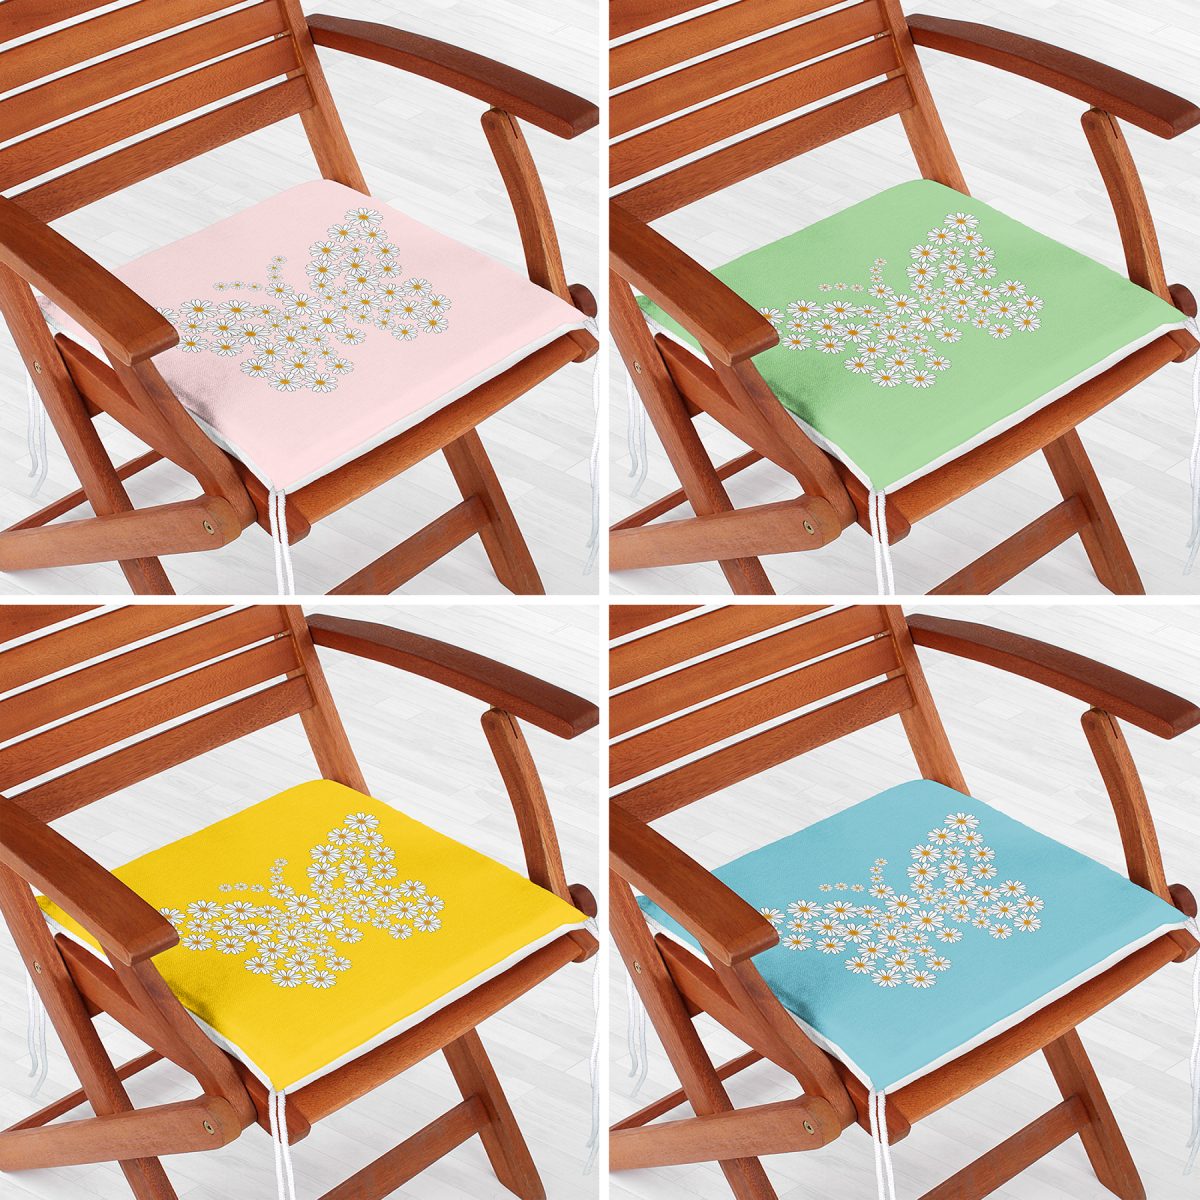 4'lü Renkli Zemin Papatya Kelebek Özel Tasarımlı Dijital Baskılı Modern Fermuarlı Sandalye Minderi Seti Realhomes